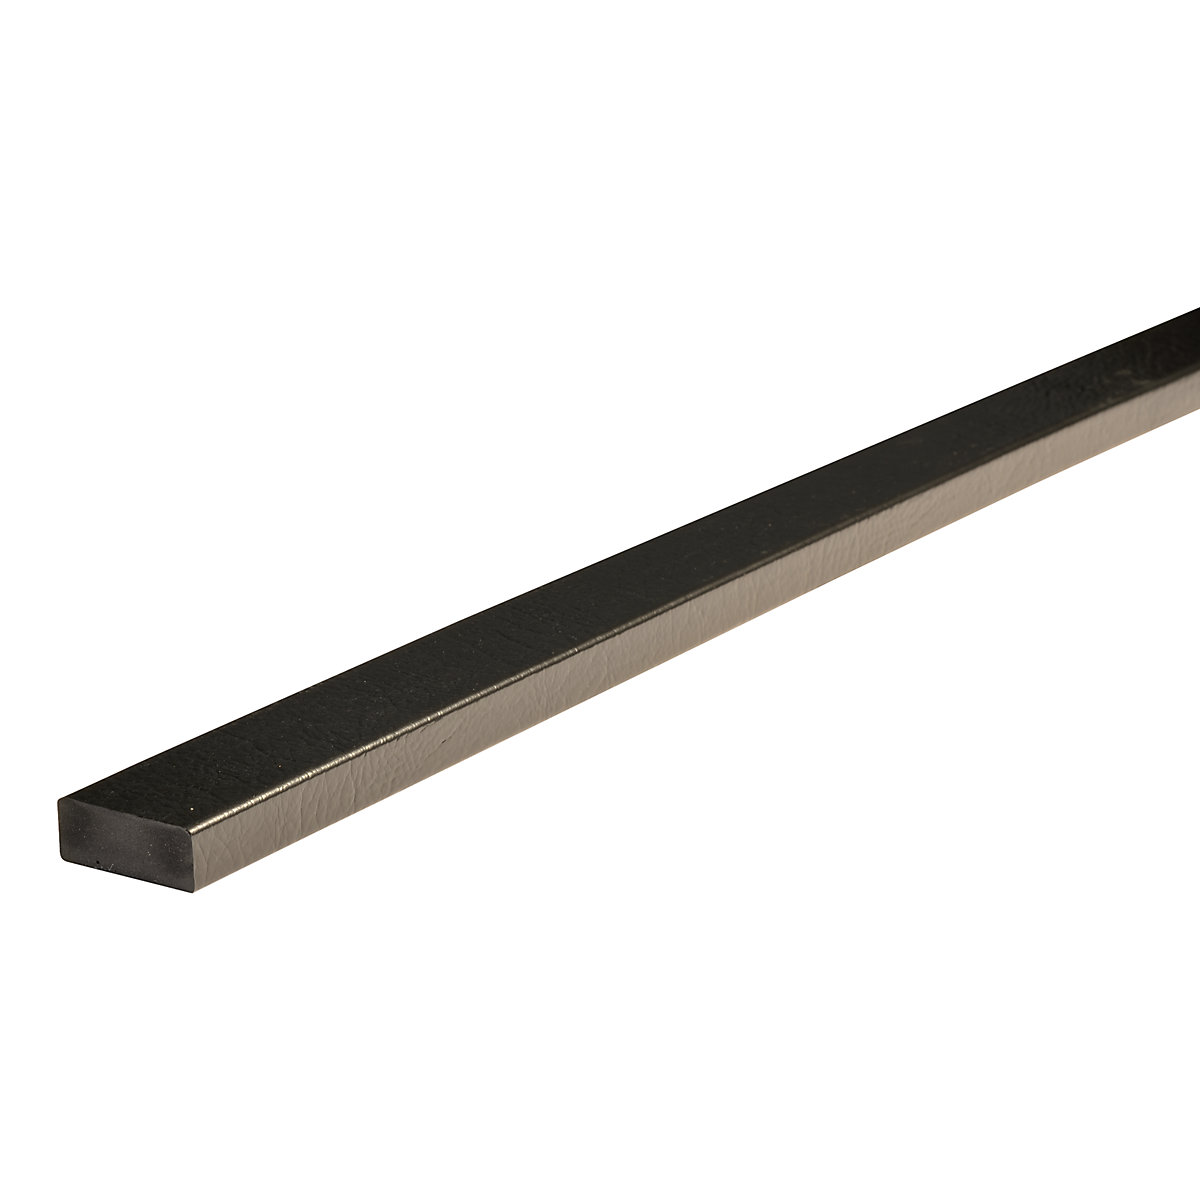 Knuffi®-oppervlaktebescherming – SHG, type D, stuk van 1 m, zwart-25